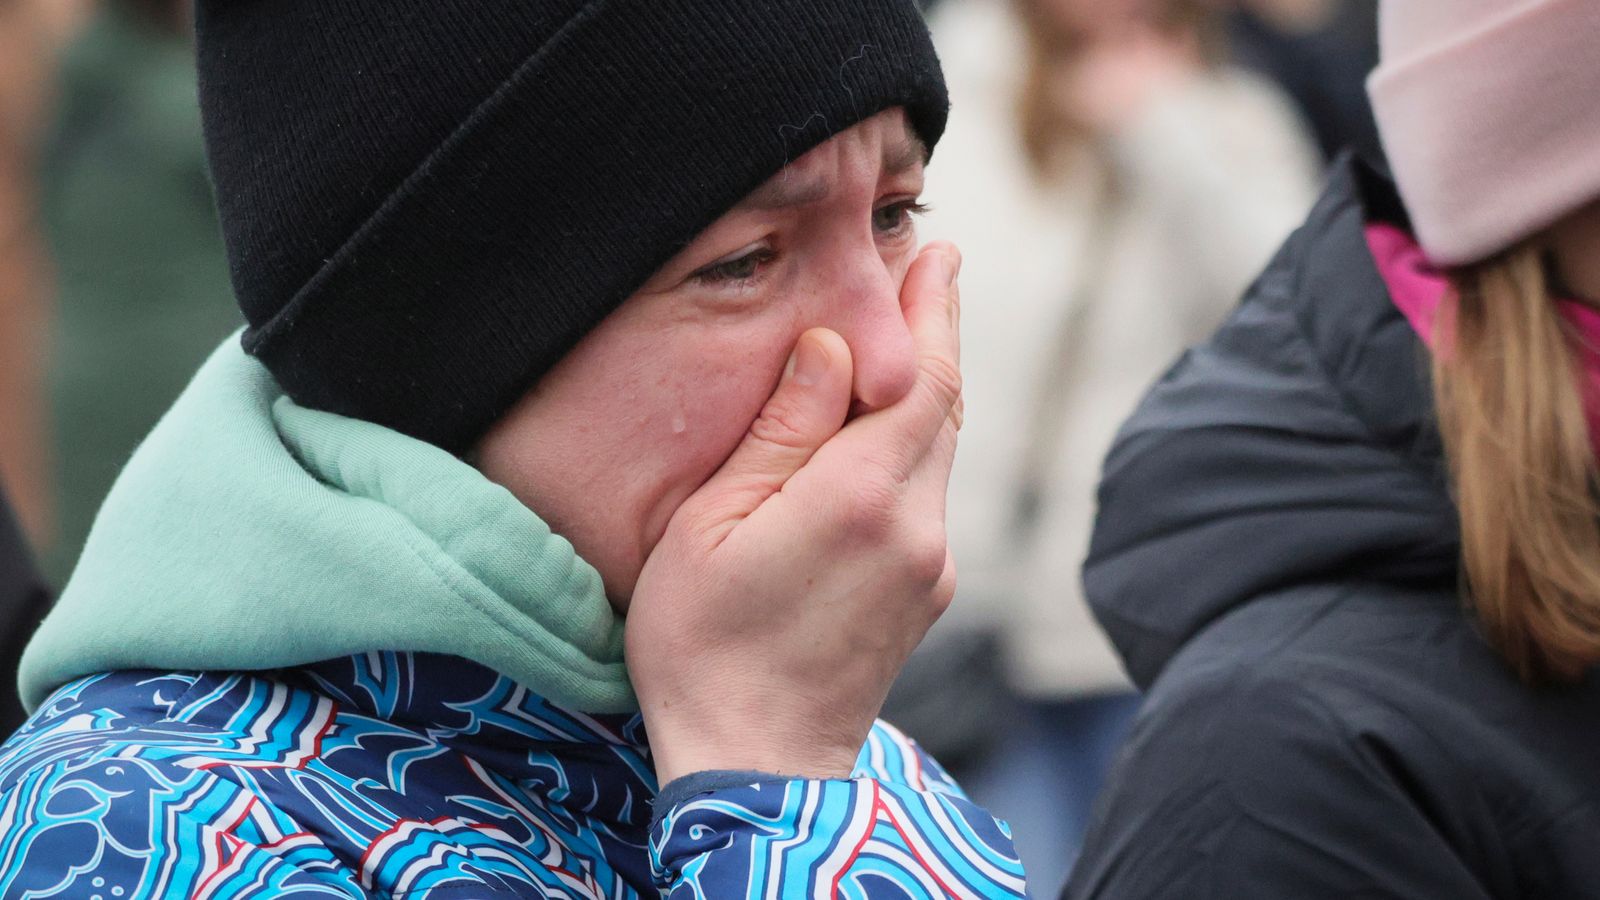 Русия скърби за жертвите на смъртоносното нападение в концертна зала, докато семействата на изчезналите са изправени пред тревожно очакване